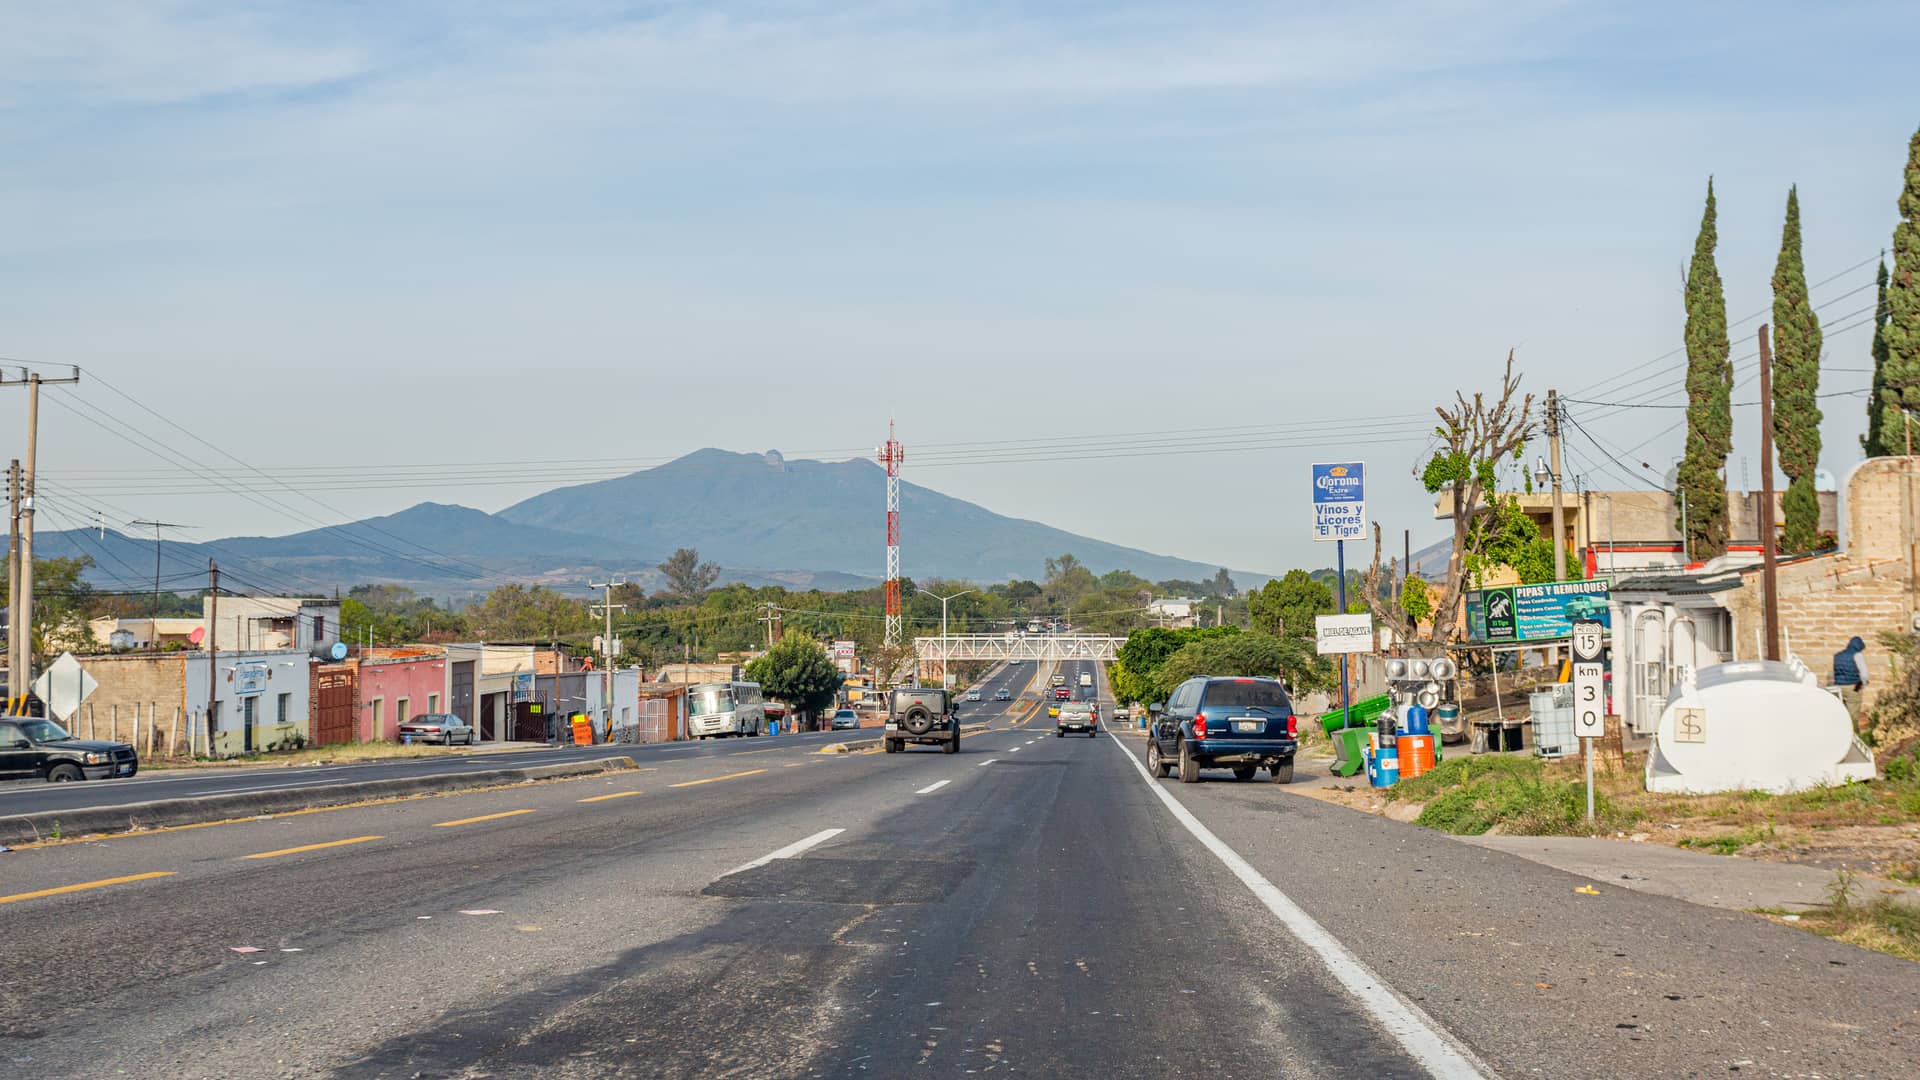 Carretera cercana a la ciudad de Tepic en Mexico donde puedes acudir a sucursales de la empresa telcel